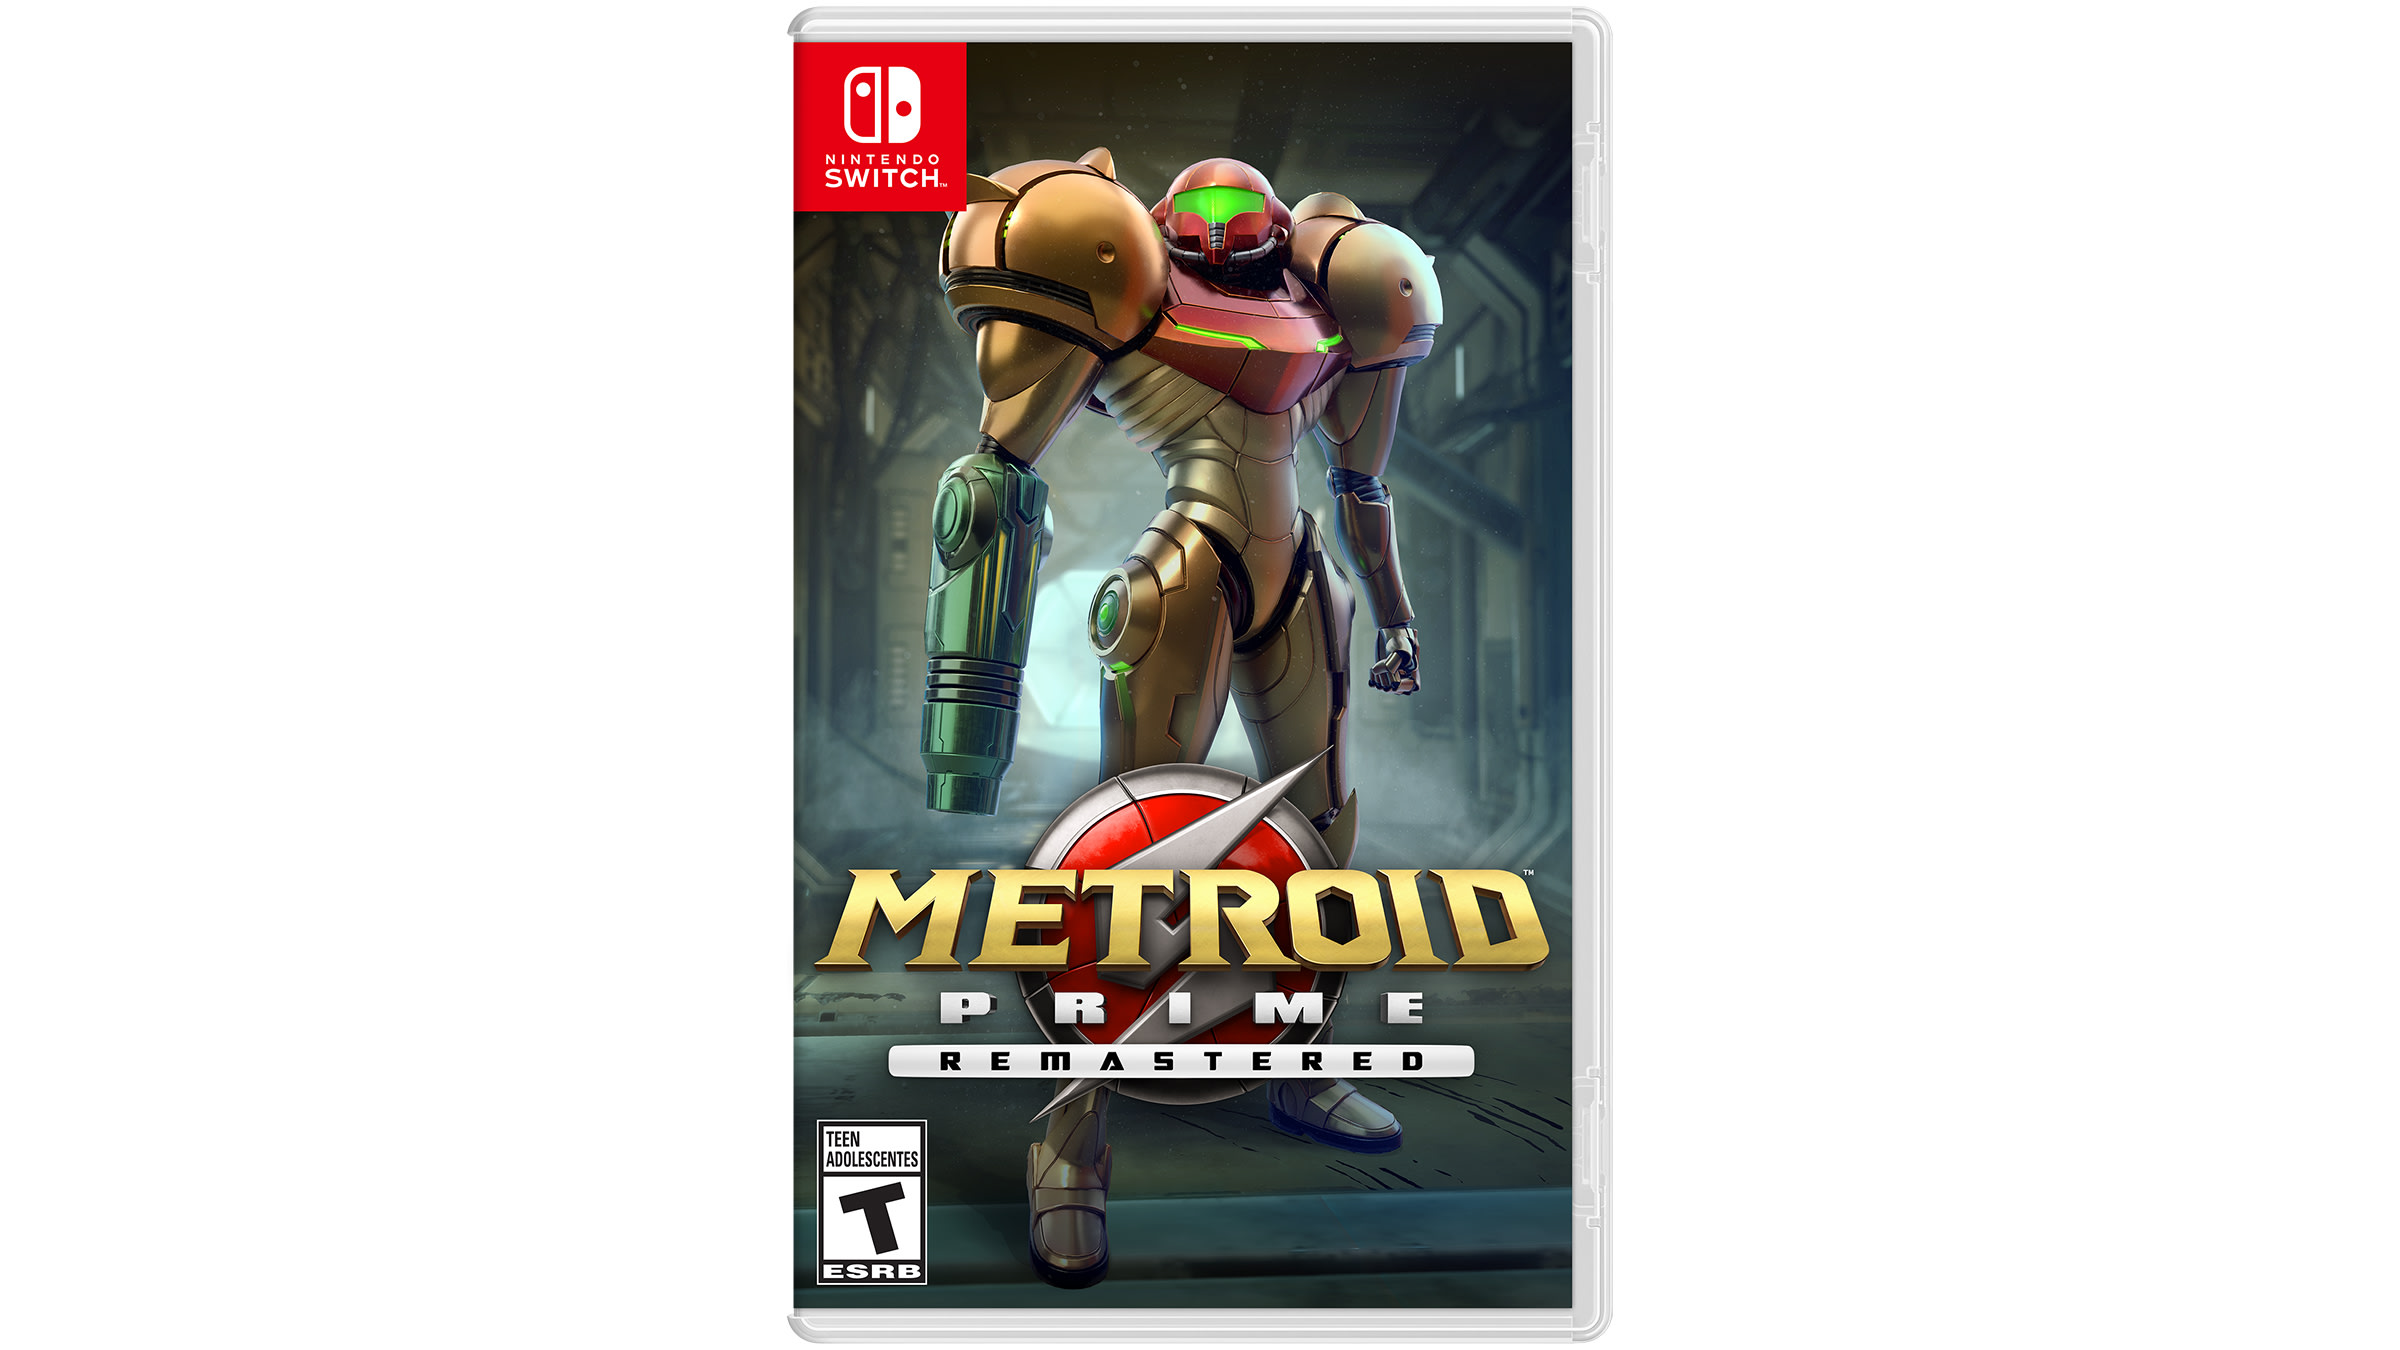 Nintendo switch metroid. Metroid Prime Remastered Nintendo. Metroid Prime Remastered Nintendo Switch. Картриджи для Nintendo Switch Metroid Prime. Nintendo DS Metroid Prime Hunters Edition.